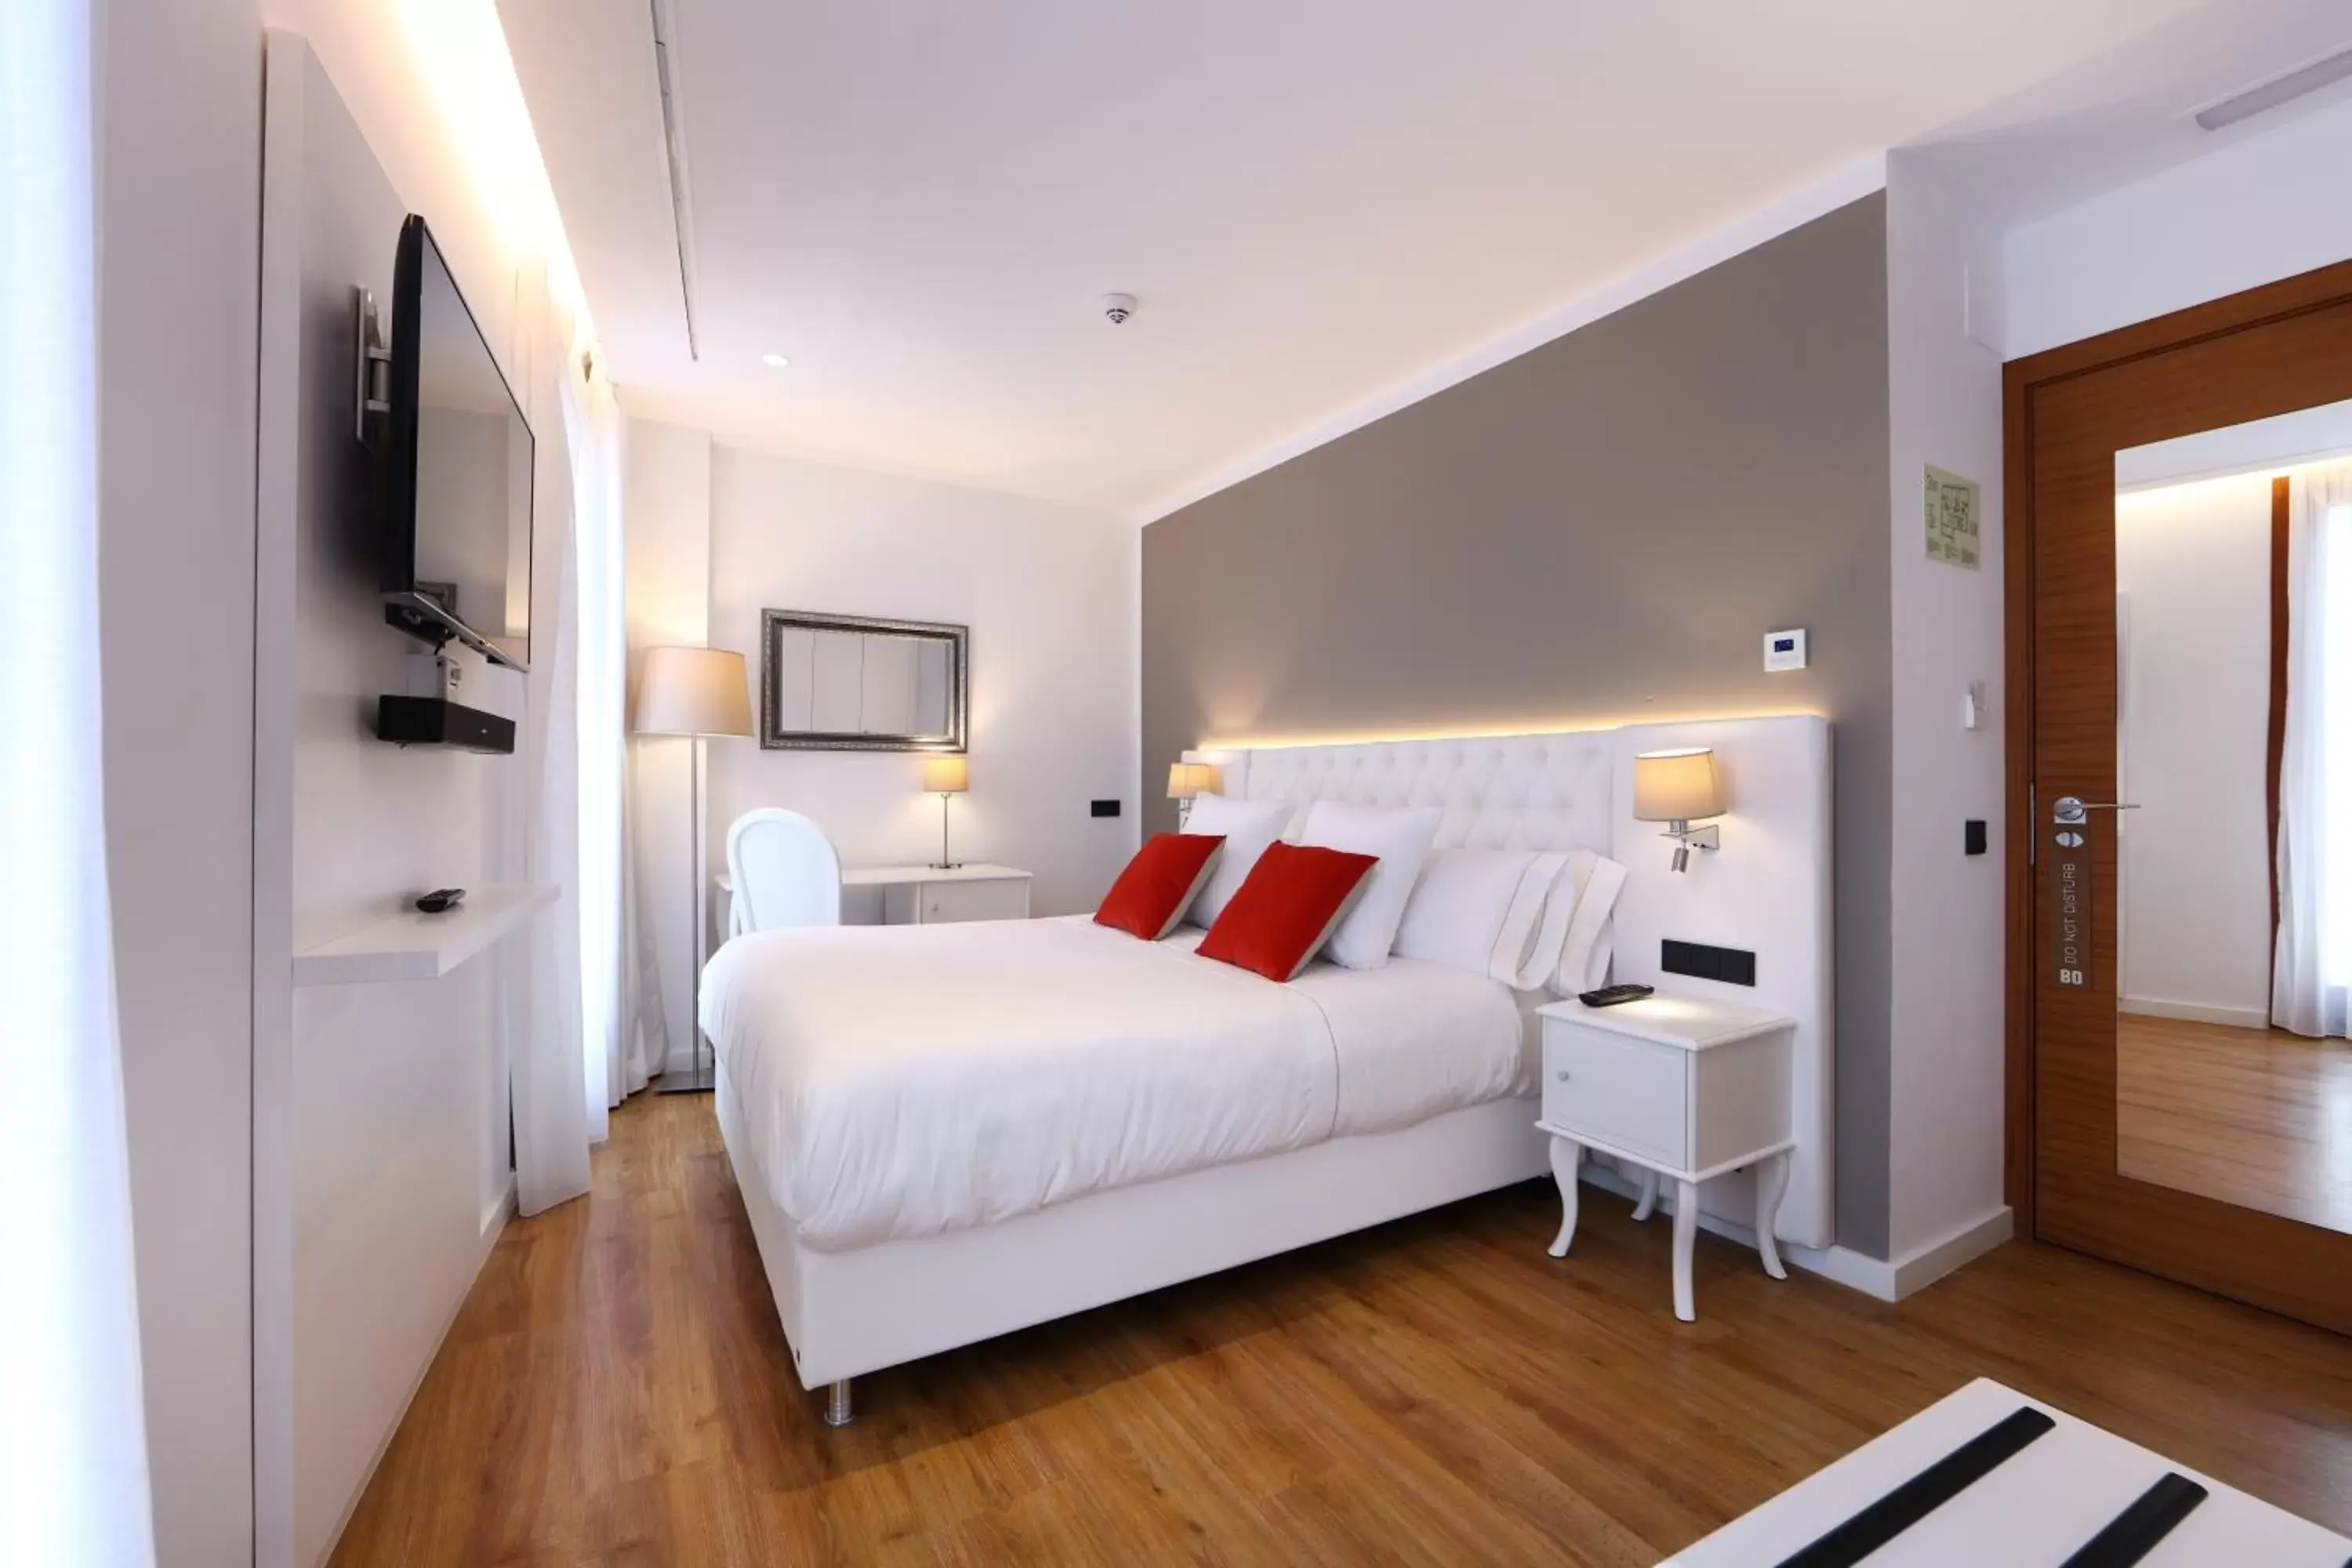 Bedroom, Room Photo in BO Hotel Palma